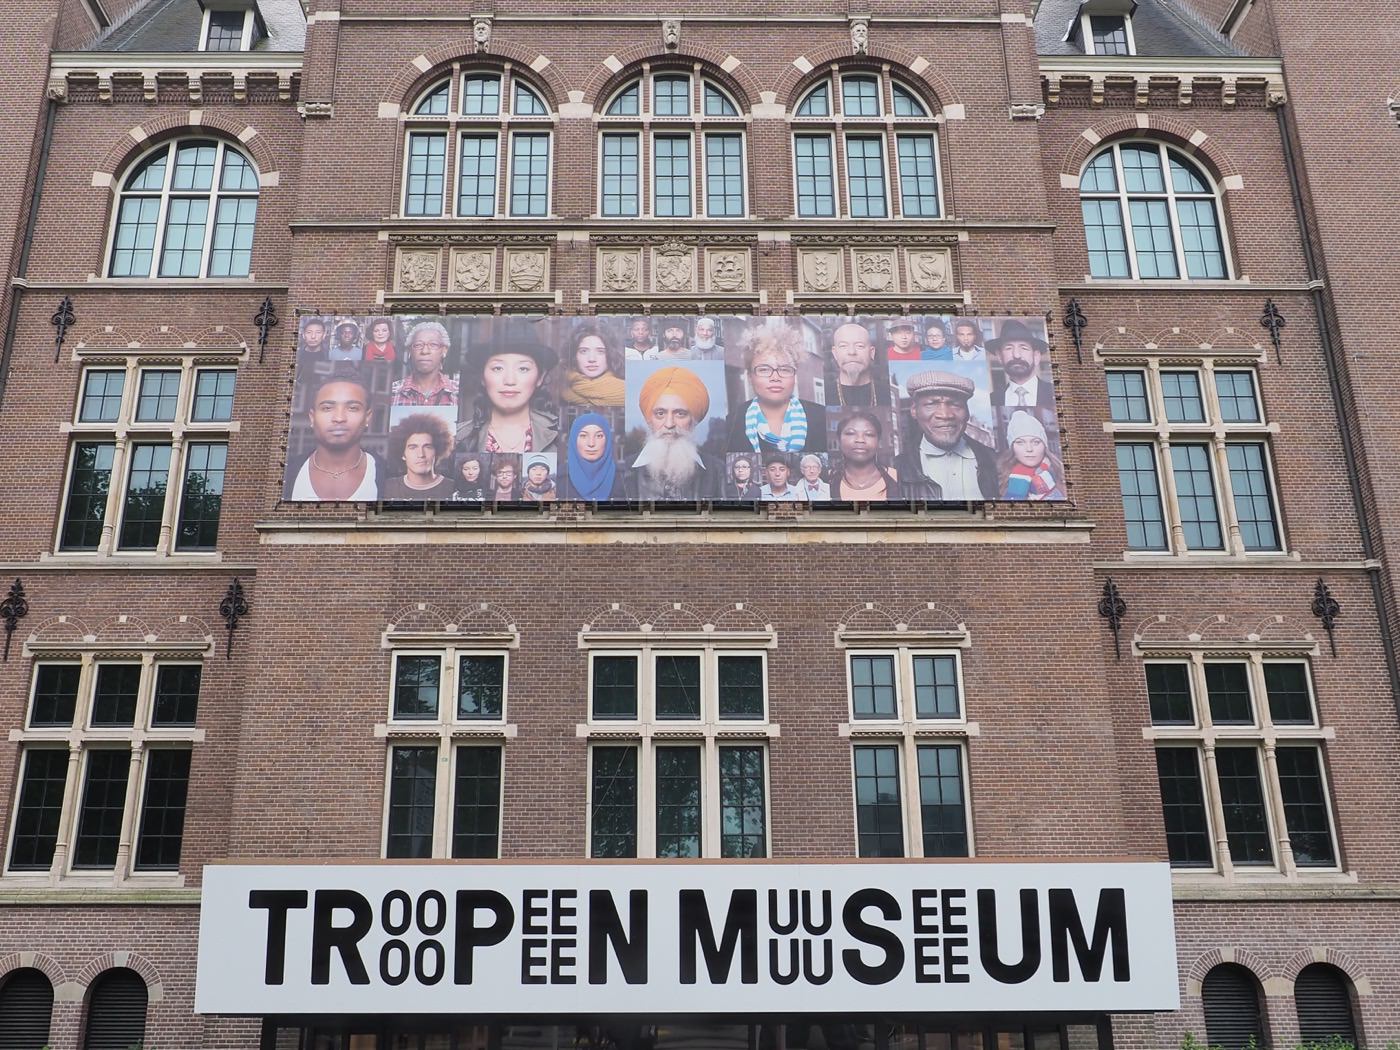 阿姆斯特丹景點 Tropenmuseum 熱帶博物館 Rhythm & Roots 音樂歷史特展 - 一口冒險 Bitesized Adventure